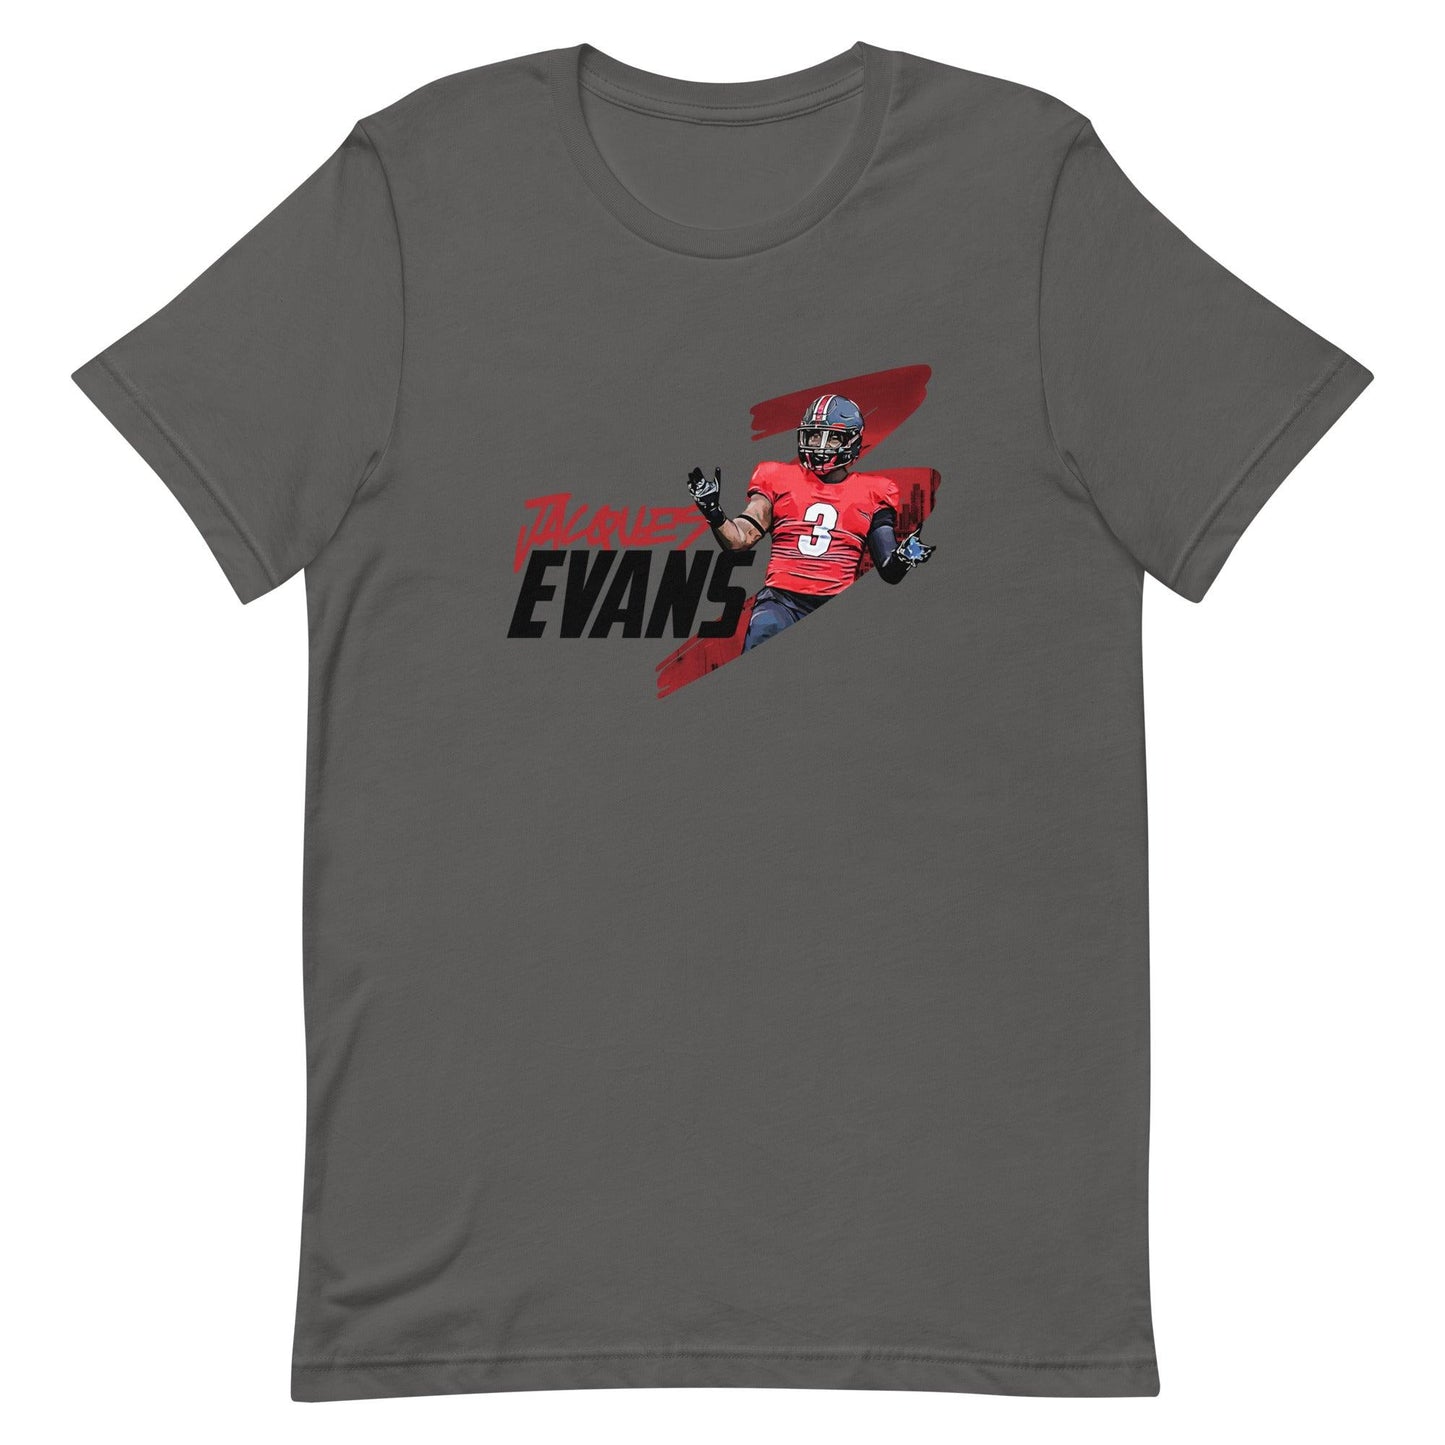 Jaques Evans "Jersey" t-shirt - Fan Arch